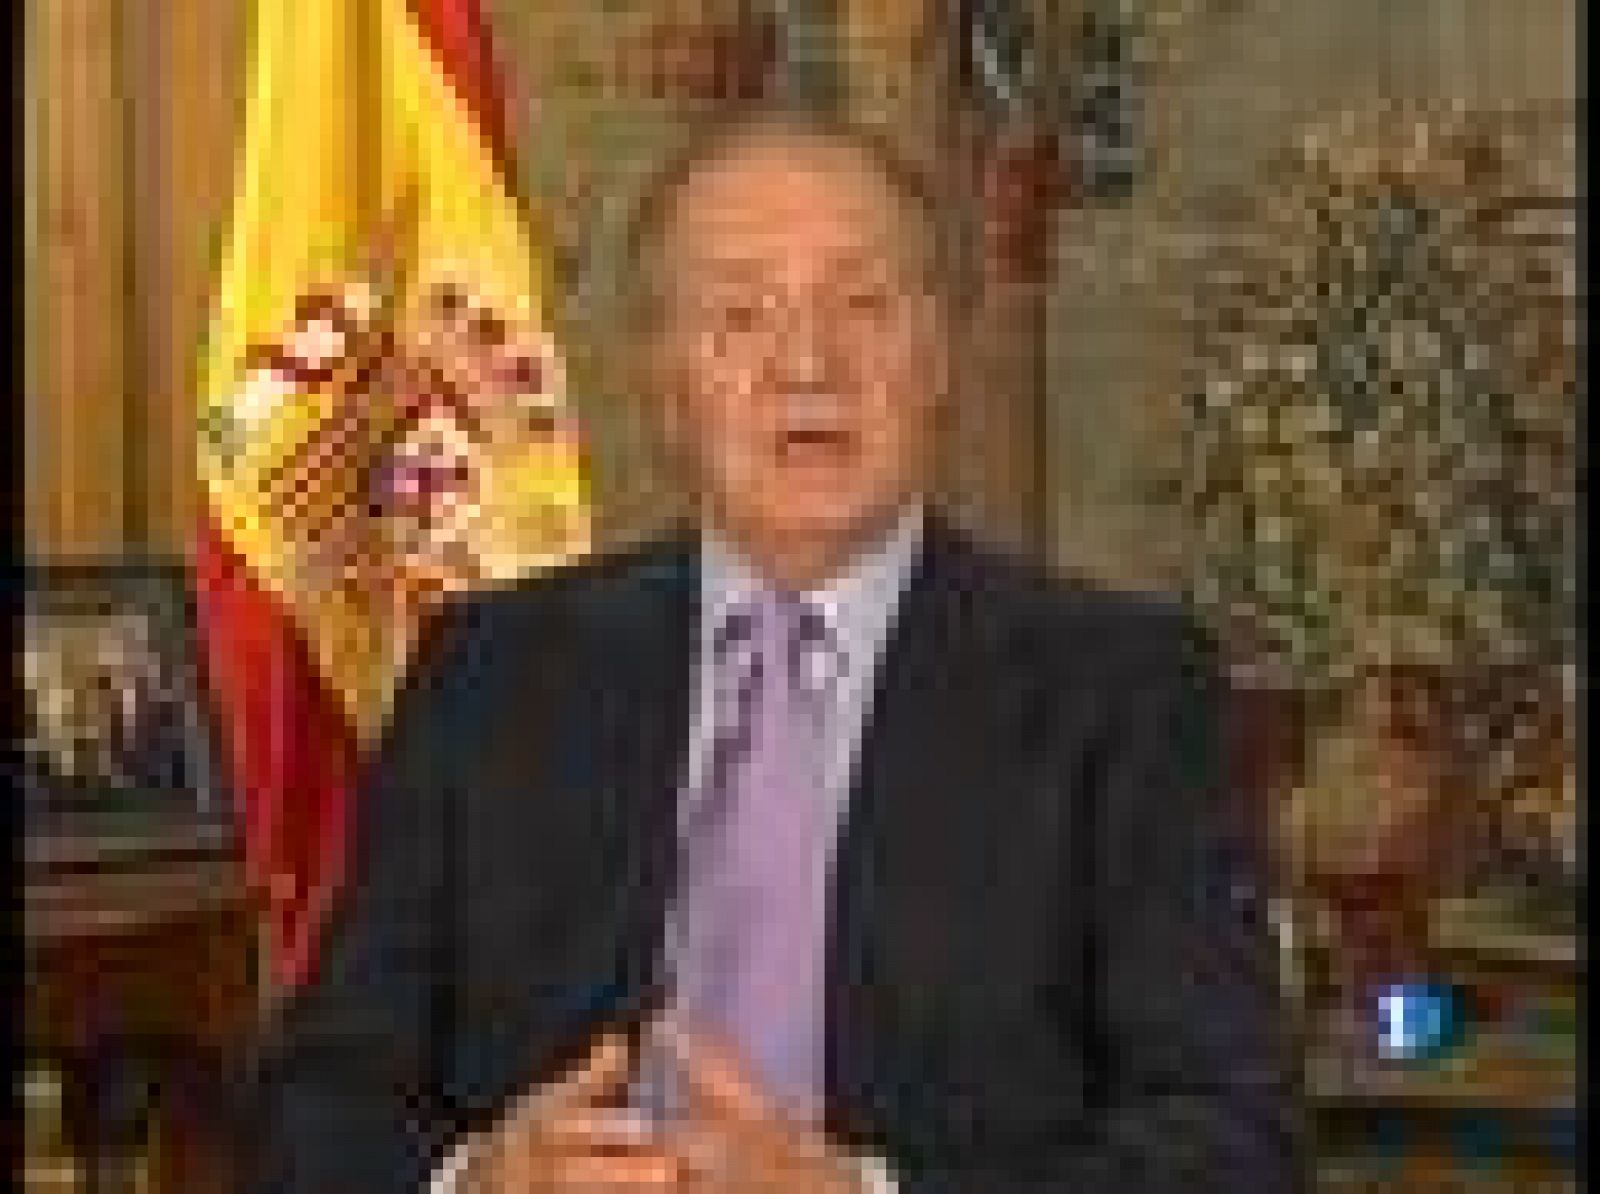 El Rey don Juan Carlos ha elegido para el 2008 una fotografía de la victoria de la selección española de fútbol en la Eurocopa como imagen para su mensaje de Navidad. Sin duda, un ejemplo más del gran año que ha sido para el deporte español este 2008 que dejamos.